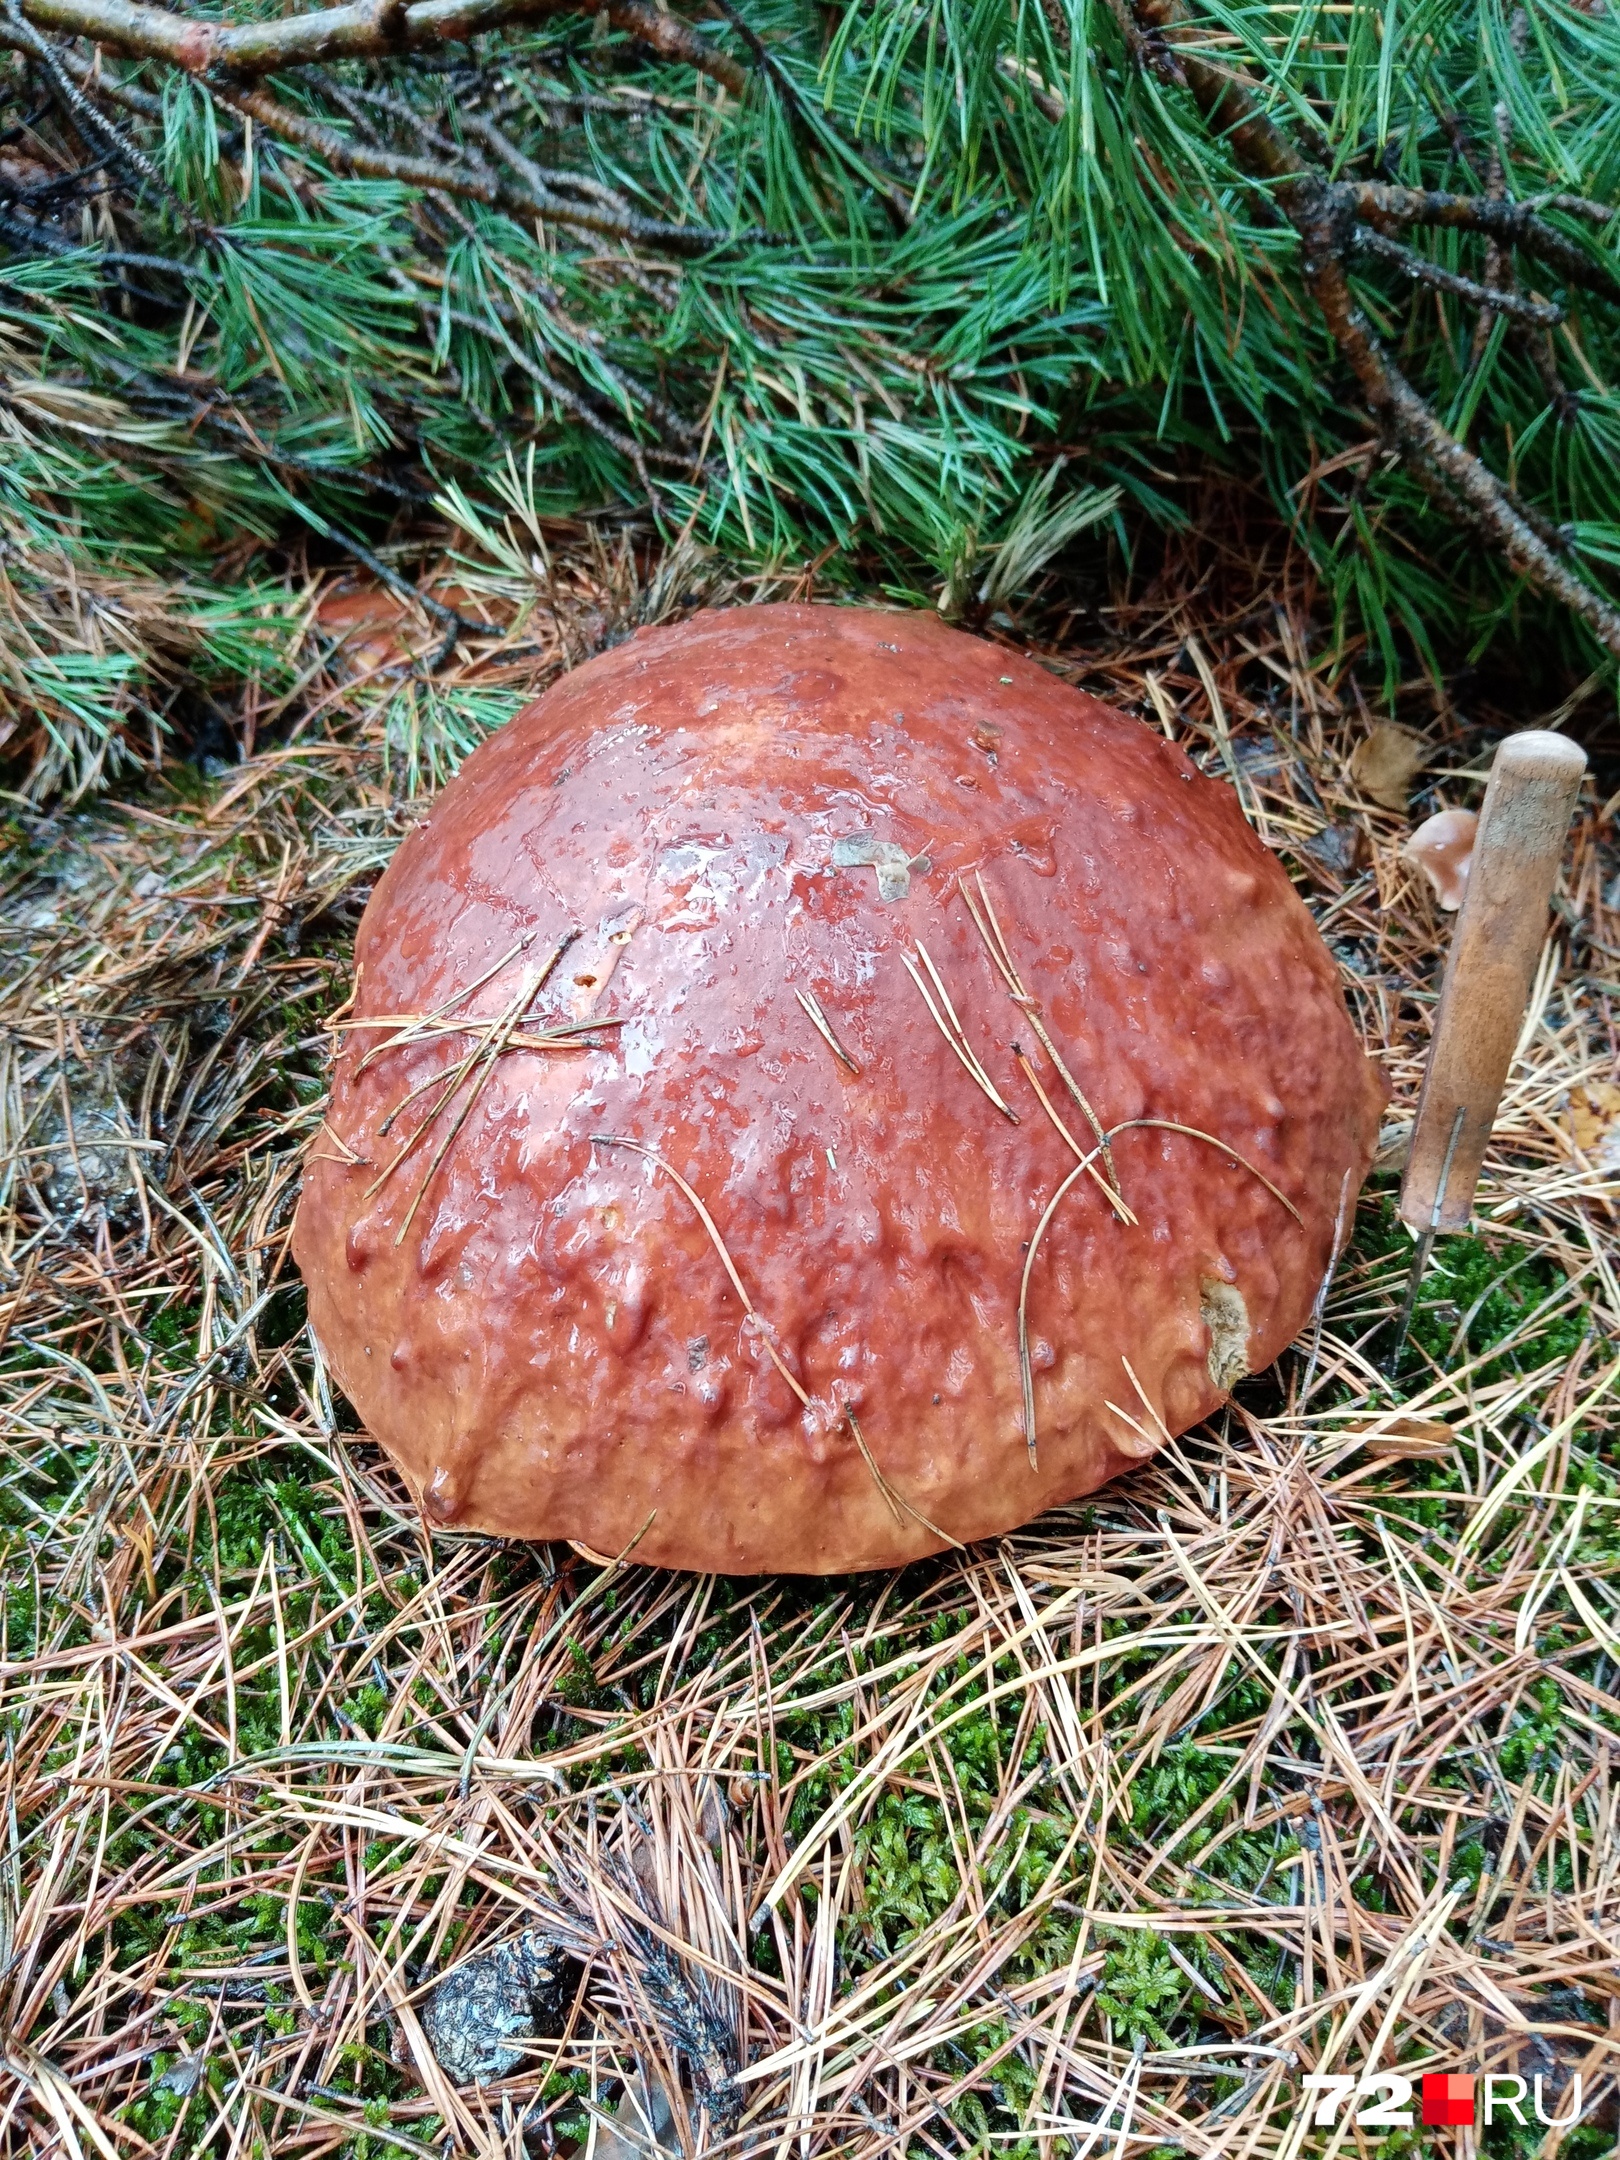 Говорят, что переросшие грибы брать с собой не стоит, но пройти мимо такого гиганта ну просто невозможно. Вы с нами согласны?